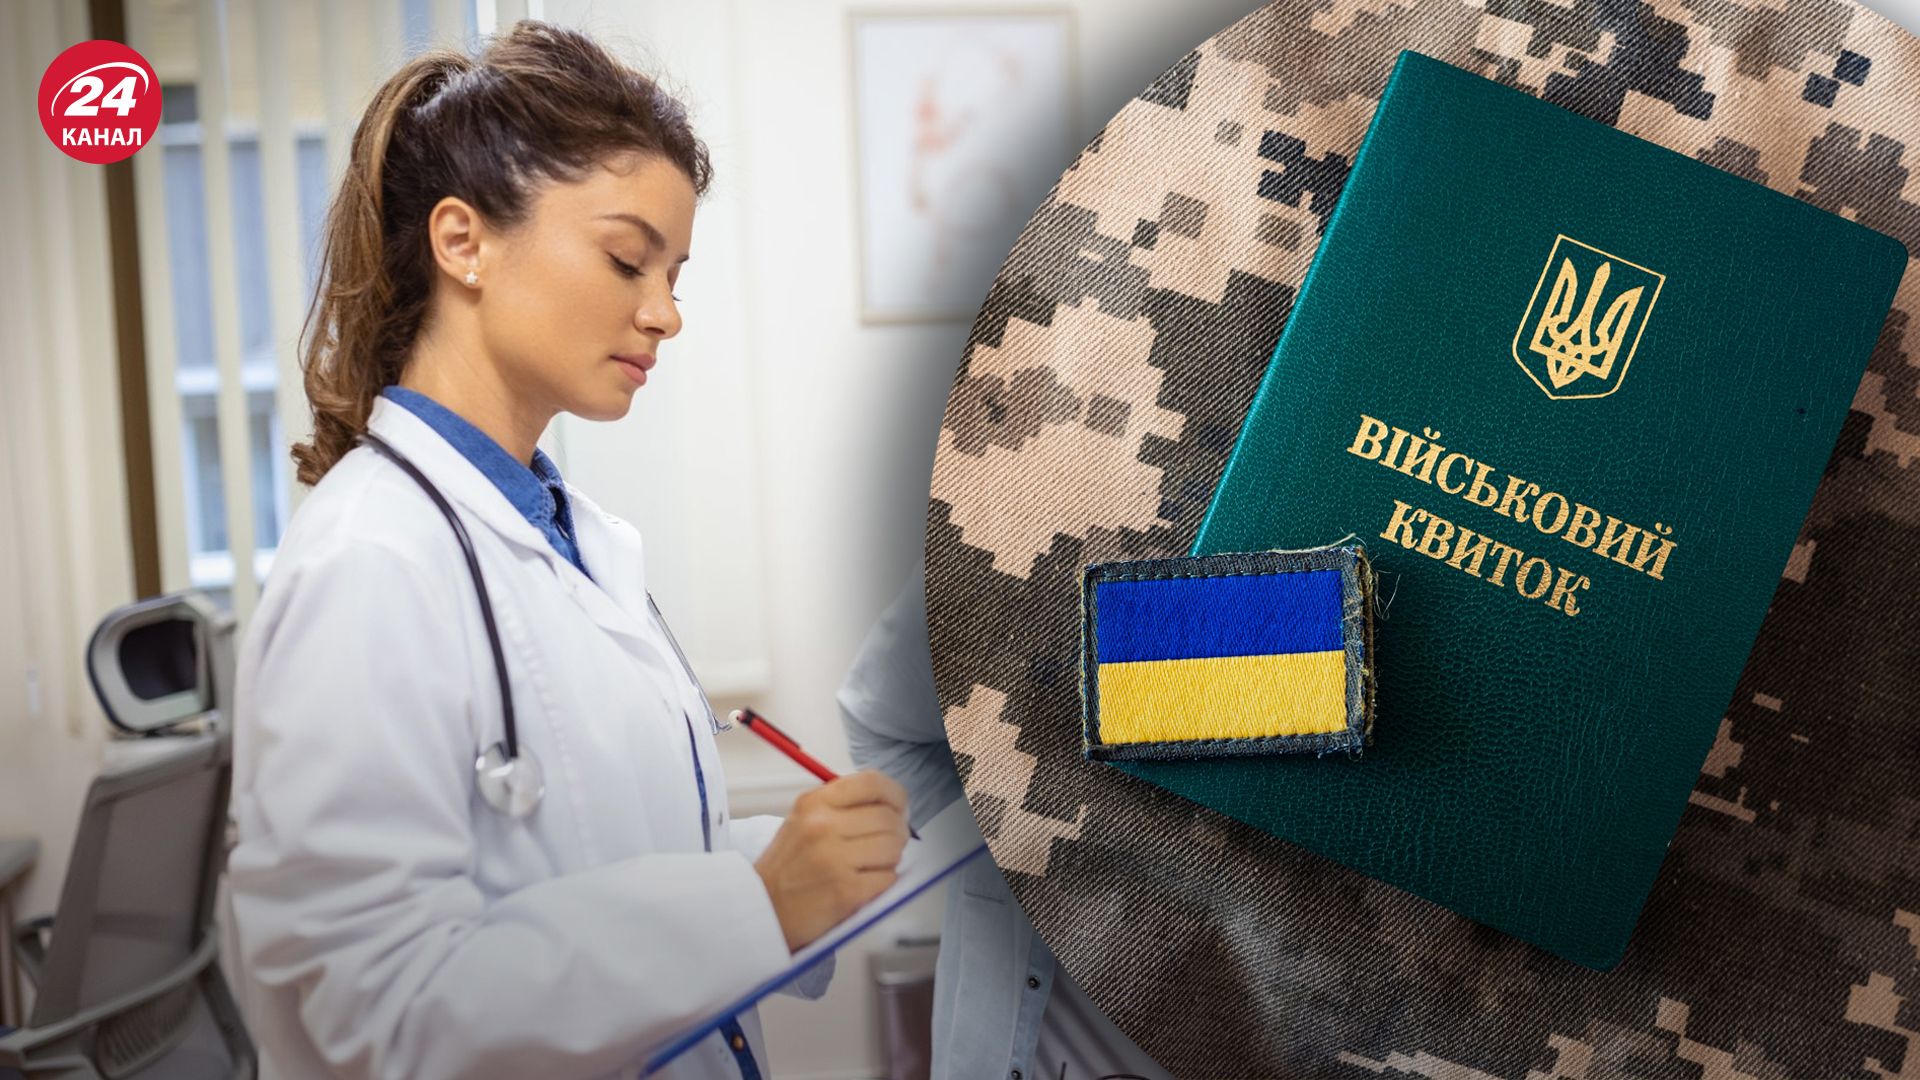 Женщины-медики больше не могут работать без военно-учетного документа